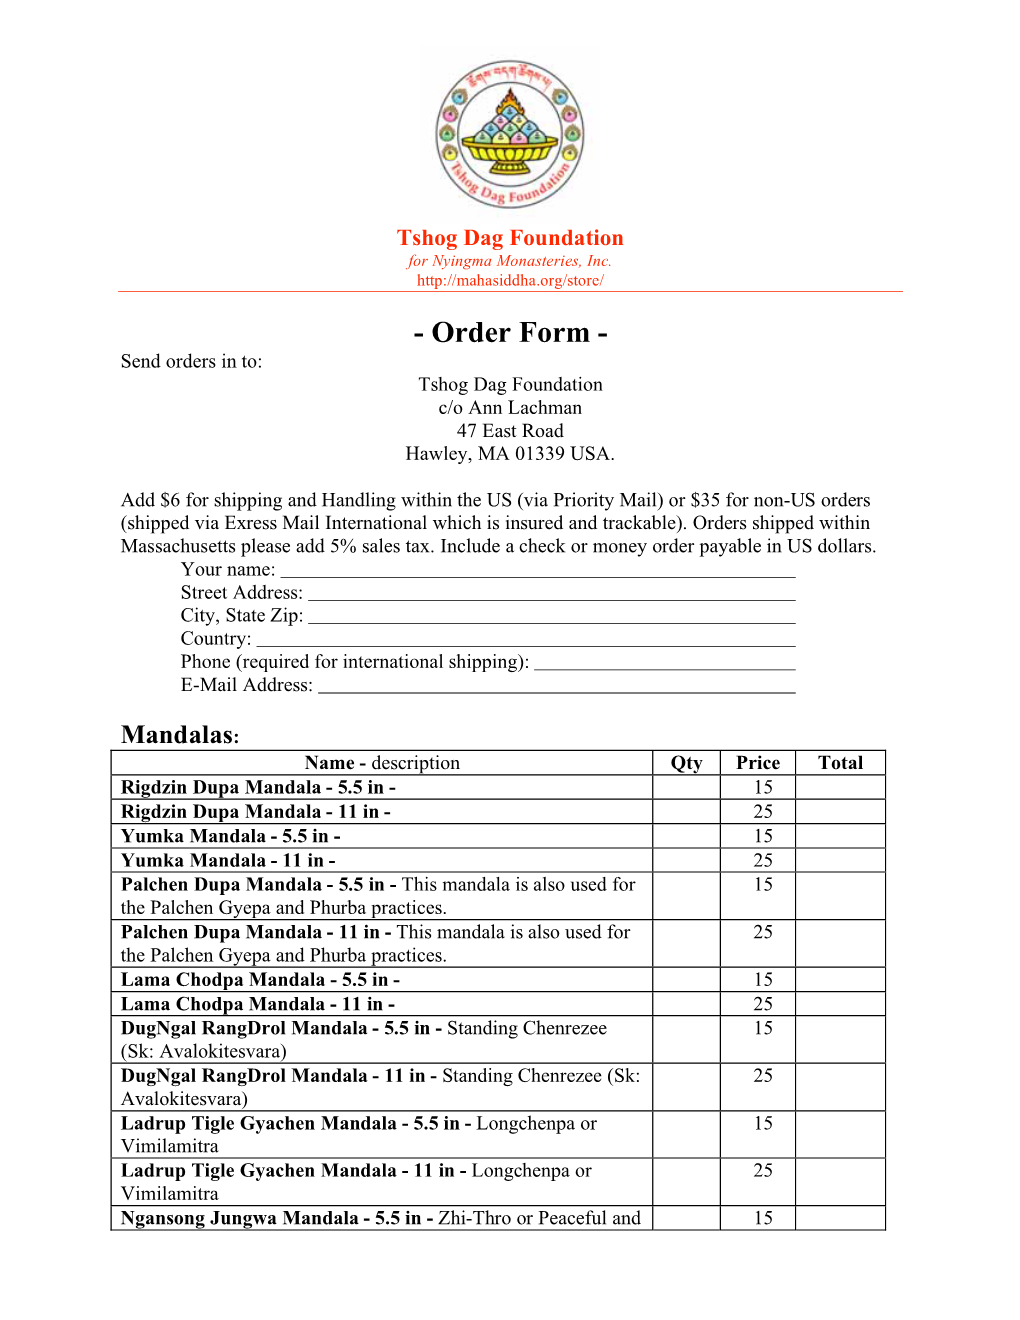 Order Form - Send Orders in To: Tshog Dag Foundation C/O Ann Lachman 47 East Road Hawley, MA 01339 USA